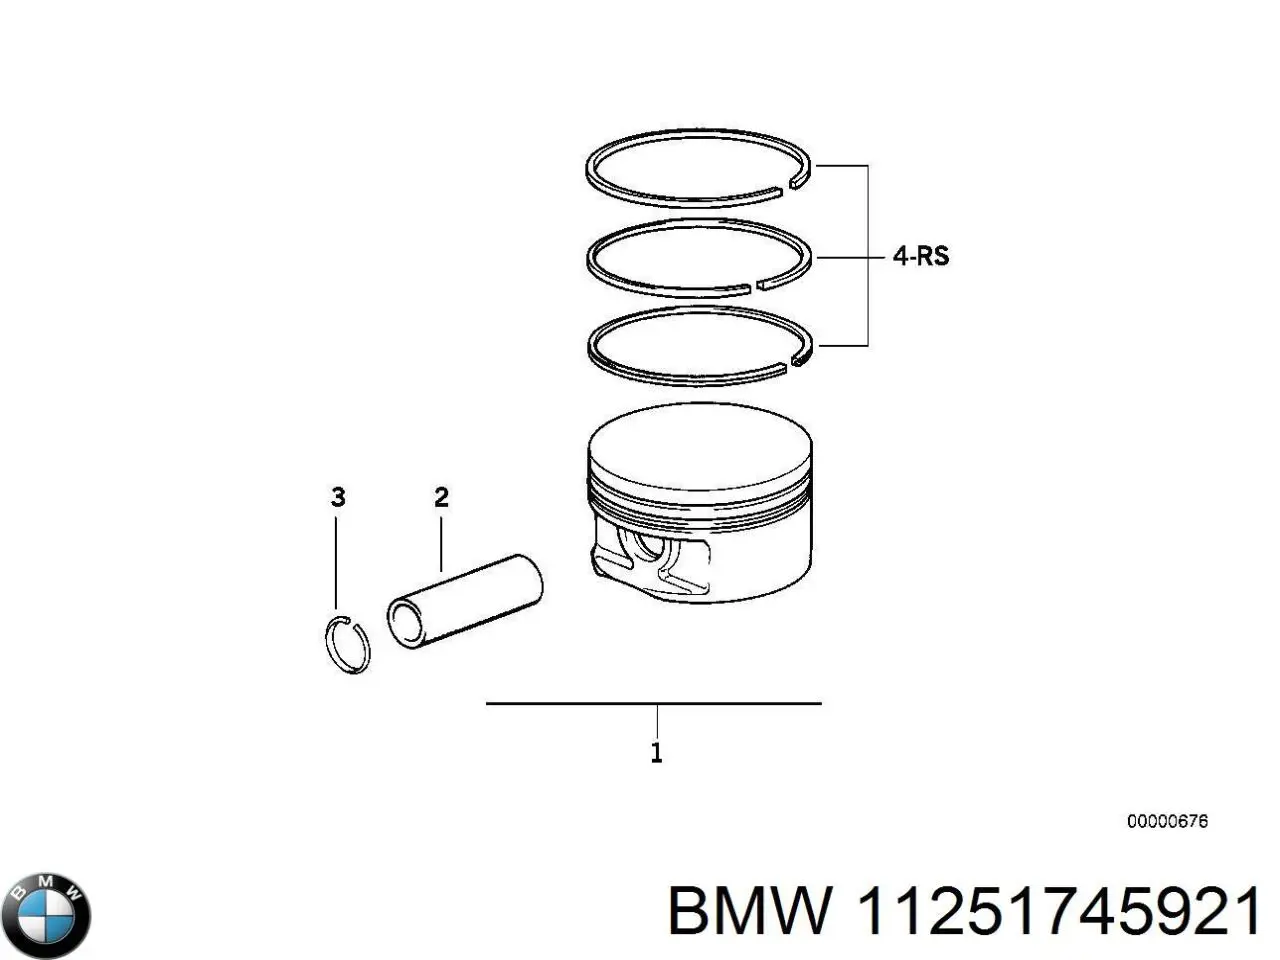 Кольца поршневые на 1 цилиндр, STD. BMW 11251745921